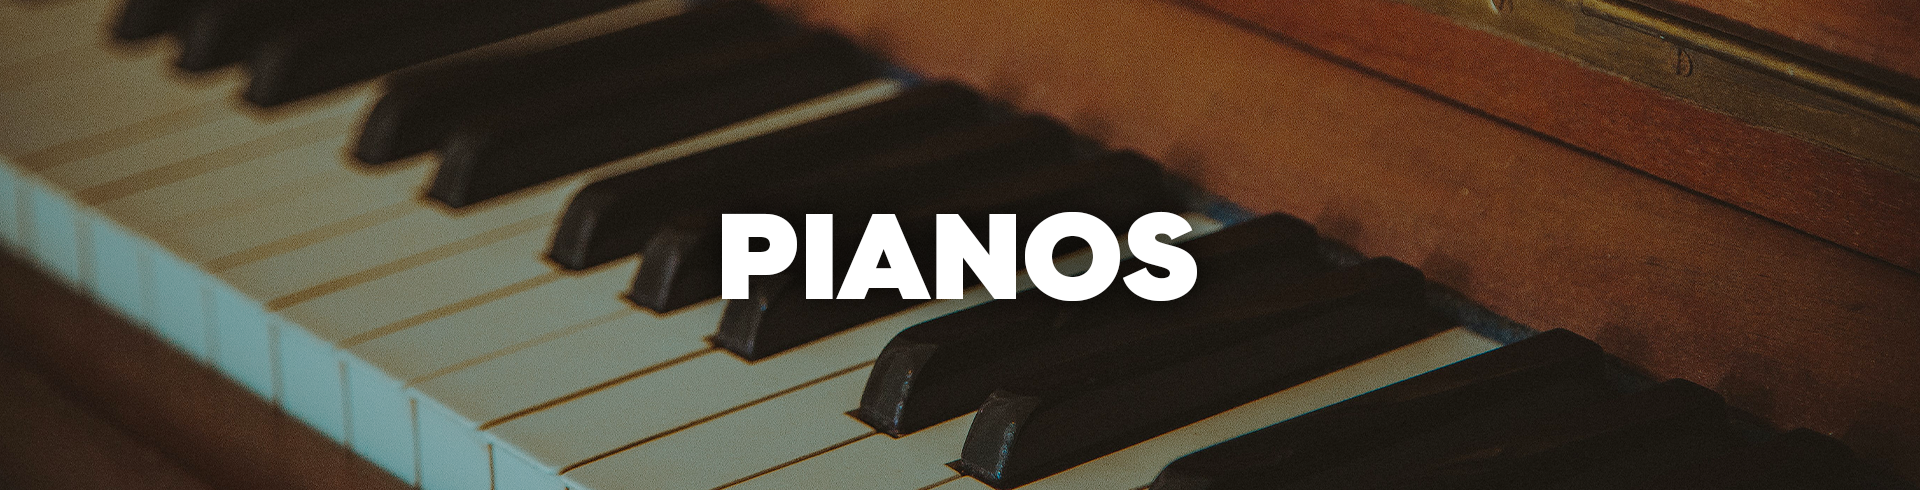 Pianos paruno instrumento musica